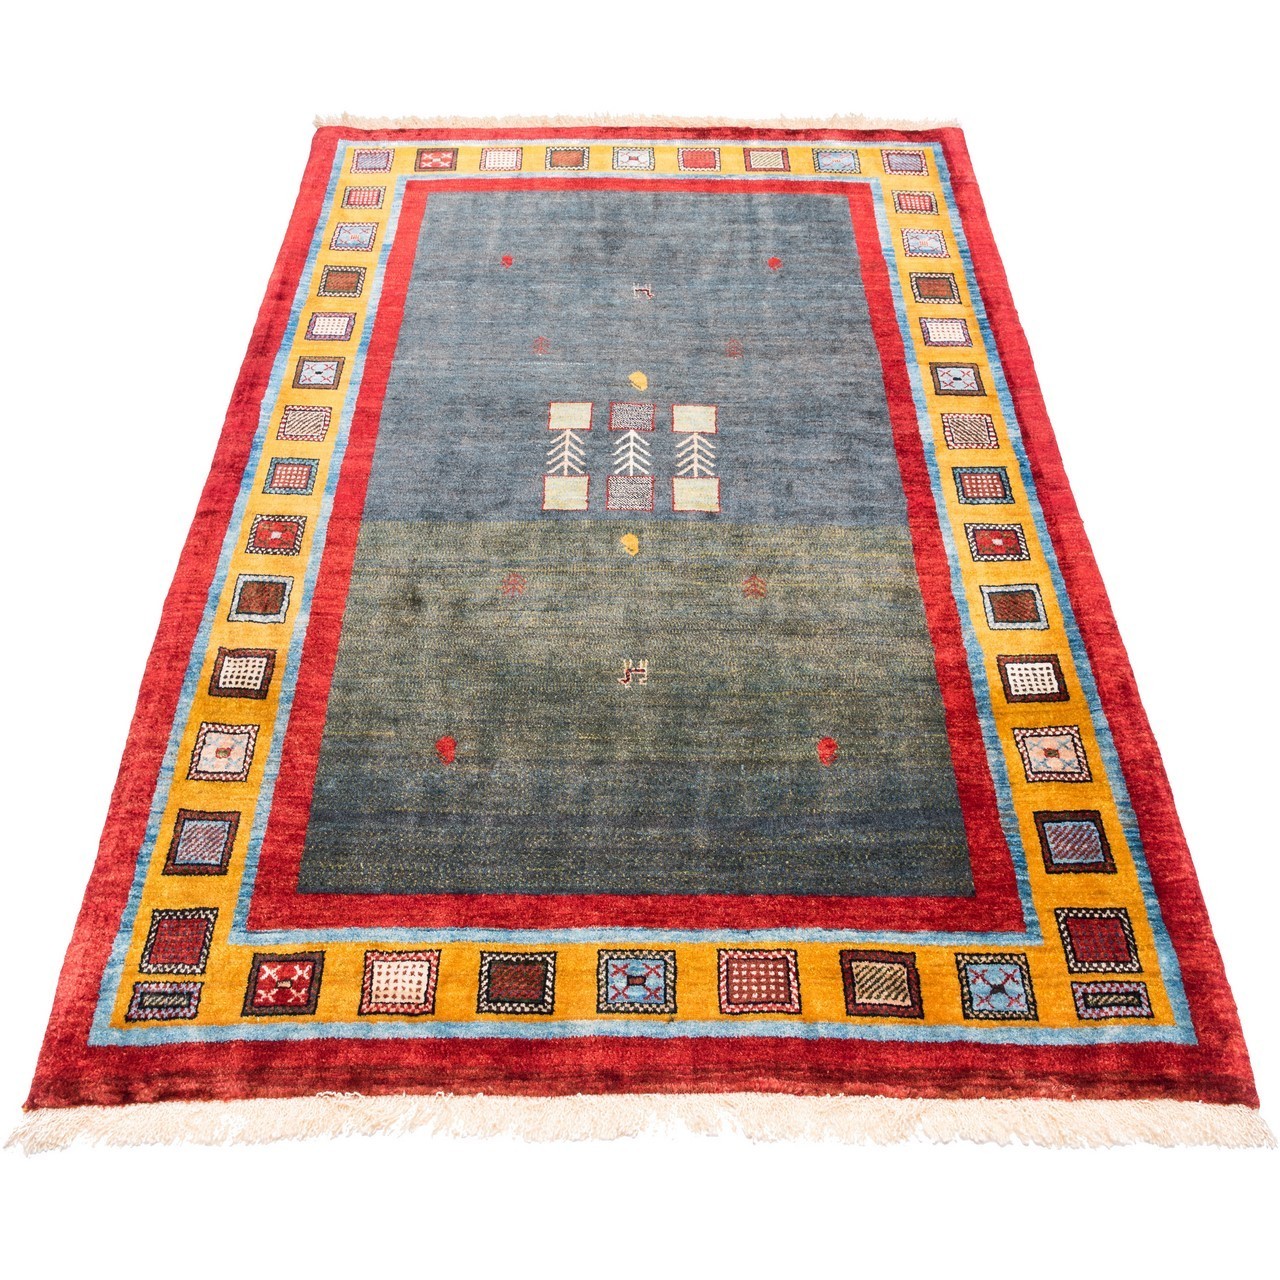 handgeknüpfter persischer Teppich. Ziffer 161033